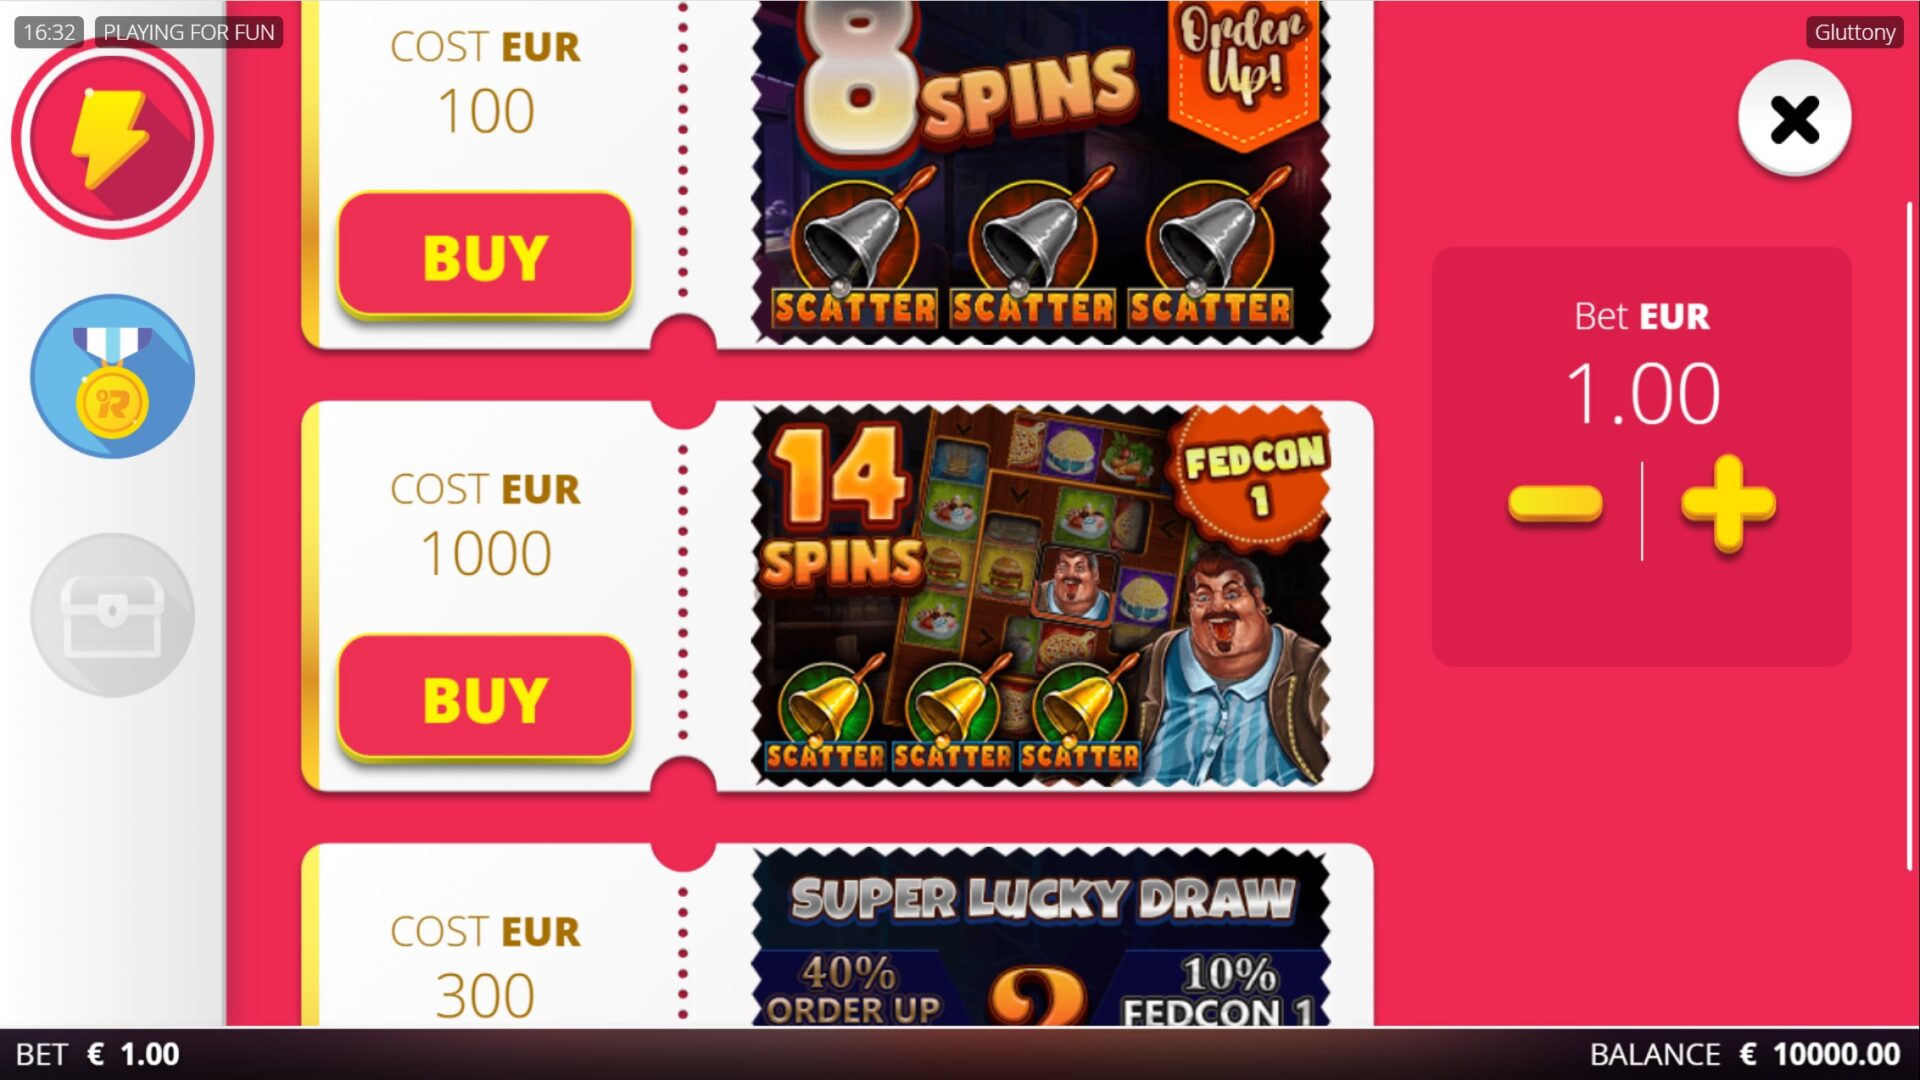 Gluttony Slot - Bonus Buy Options